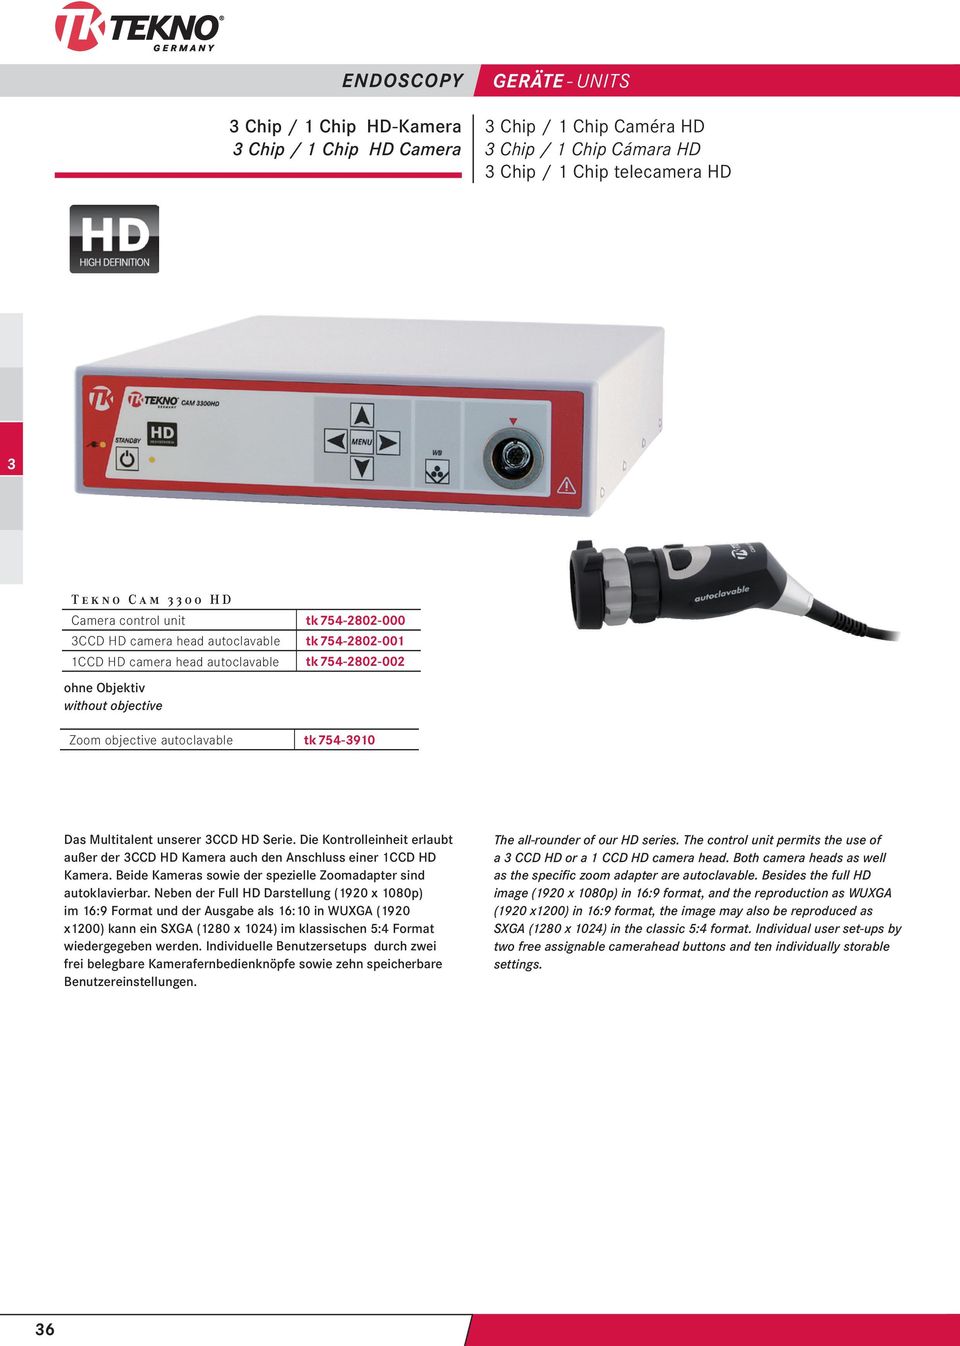 Die Kontrolleinheit erlaubt außer der CCD HD Kamera auch den Anschluss einer 1CCD HD Kamera. Beide Kameras sowie der spezielle Zoomadapter sind autoklavierbar.